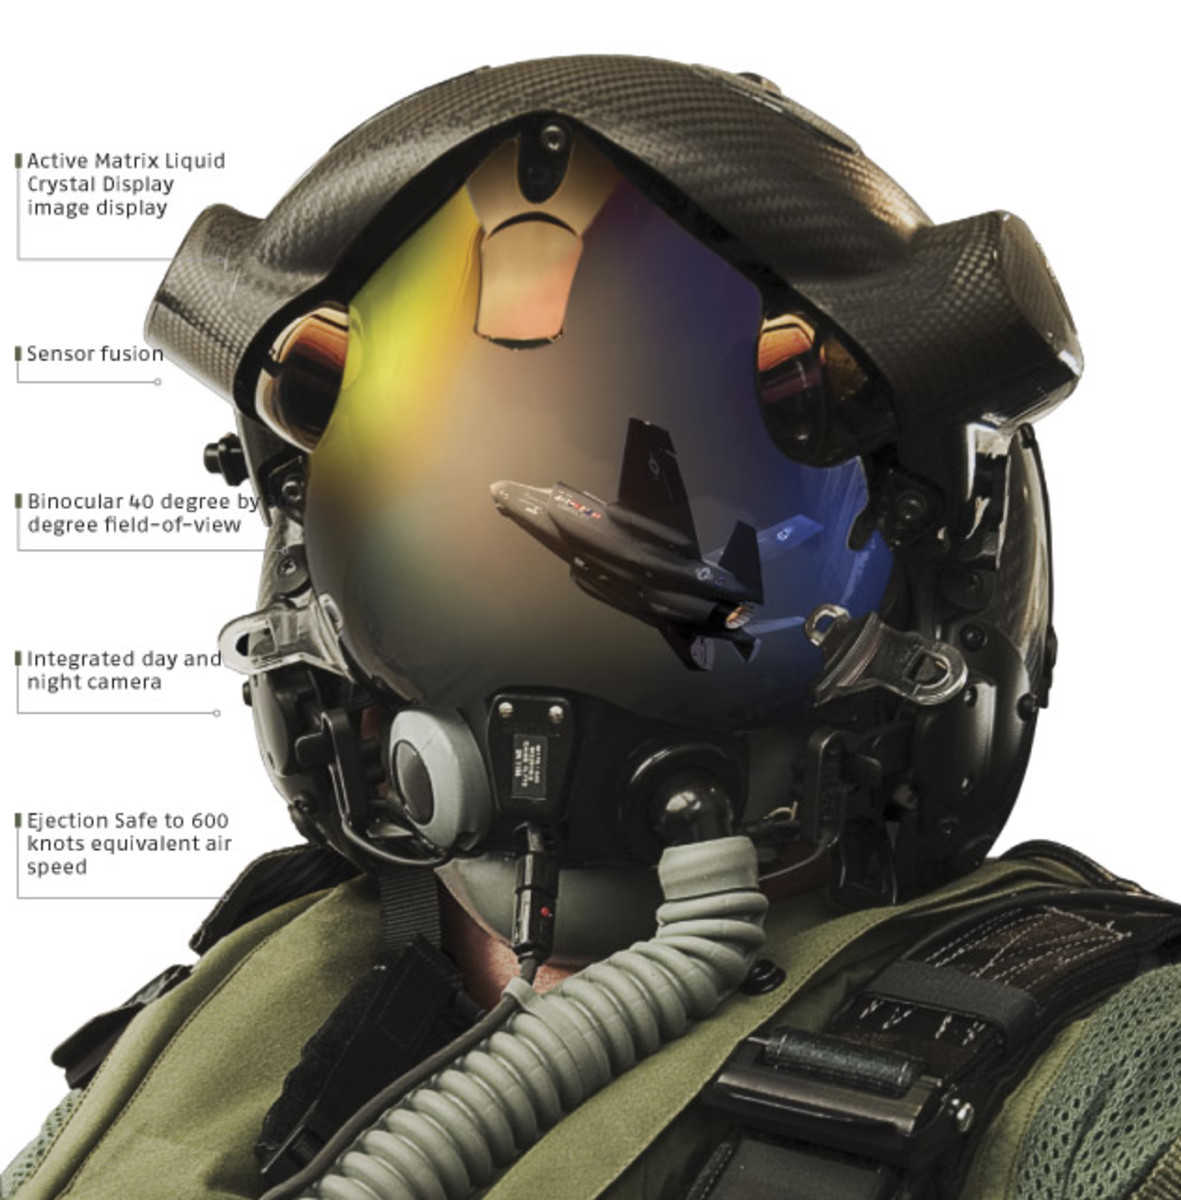 The futuristic flight helmet of the an F-35 pilot.